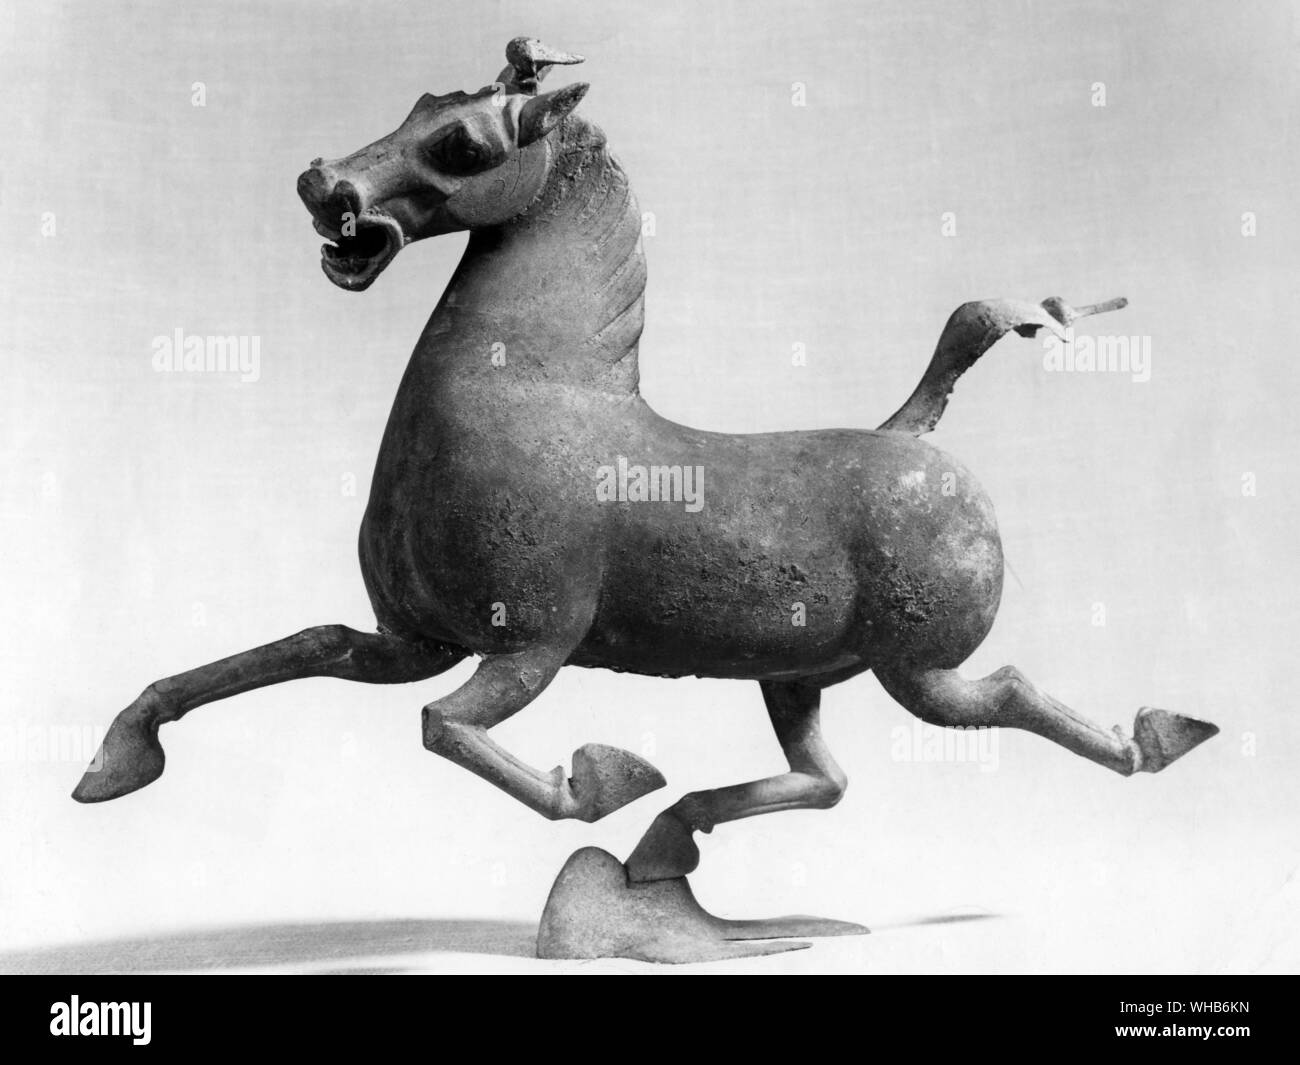 Bronze Figur von einem fliegenden Pferd. China, VI.3 (vi) Xin zu Ostern Han 005202.031-. Berühmten fliegenden Bronze Pferd und Schlucken aus der Östlichen Han-Dynastie (206 v. Chr. bis 220 nach Chr.). Die ursprüngliche Bronzestück wurde 1969, als die Dorfbewohner in der kleinen Stadt Leitai, Wuwei, Provinz Gansu ein altes Grab entdeckt beim Graben Fundamente entdeckt. Unter den mehr als 200 Reliquien im Grab gefunden wurde, war die fliegenden Pferd und Schlucken. Der pferdehuf ist hoch, da die erschrocken legt schlucken Sie das Wiehern, raffiniert schwenkbare Pferd angehoben. In den frühen 1970er Jahren, Repliken aus Taiwan der Markt überschwemmt, aber Stockfoto